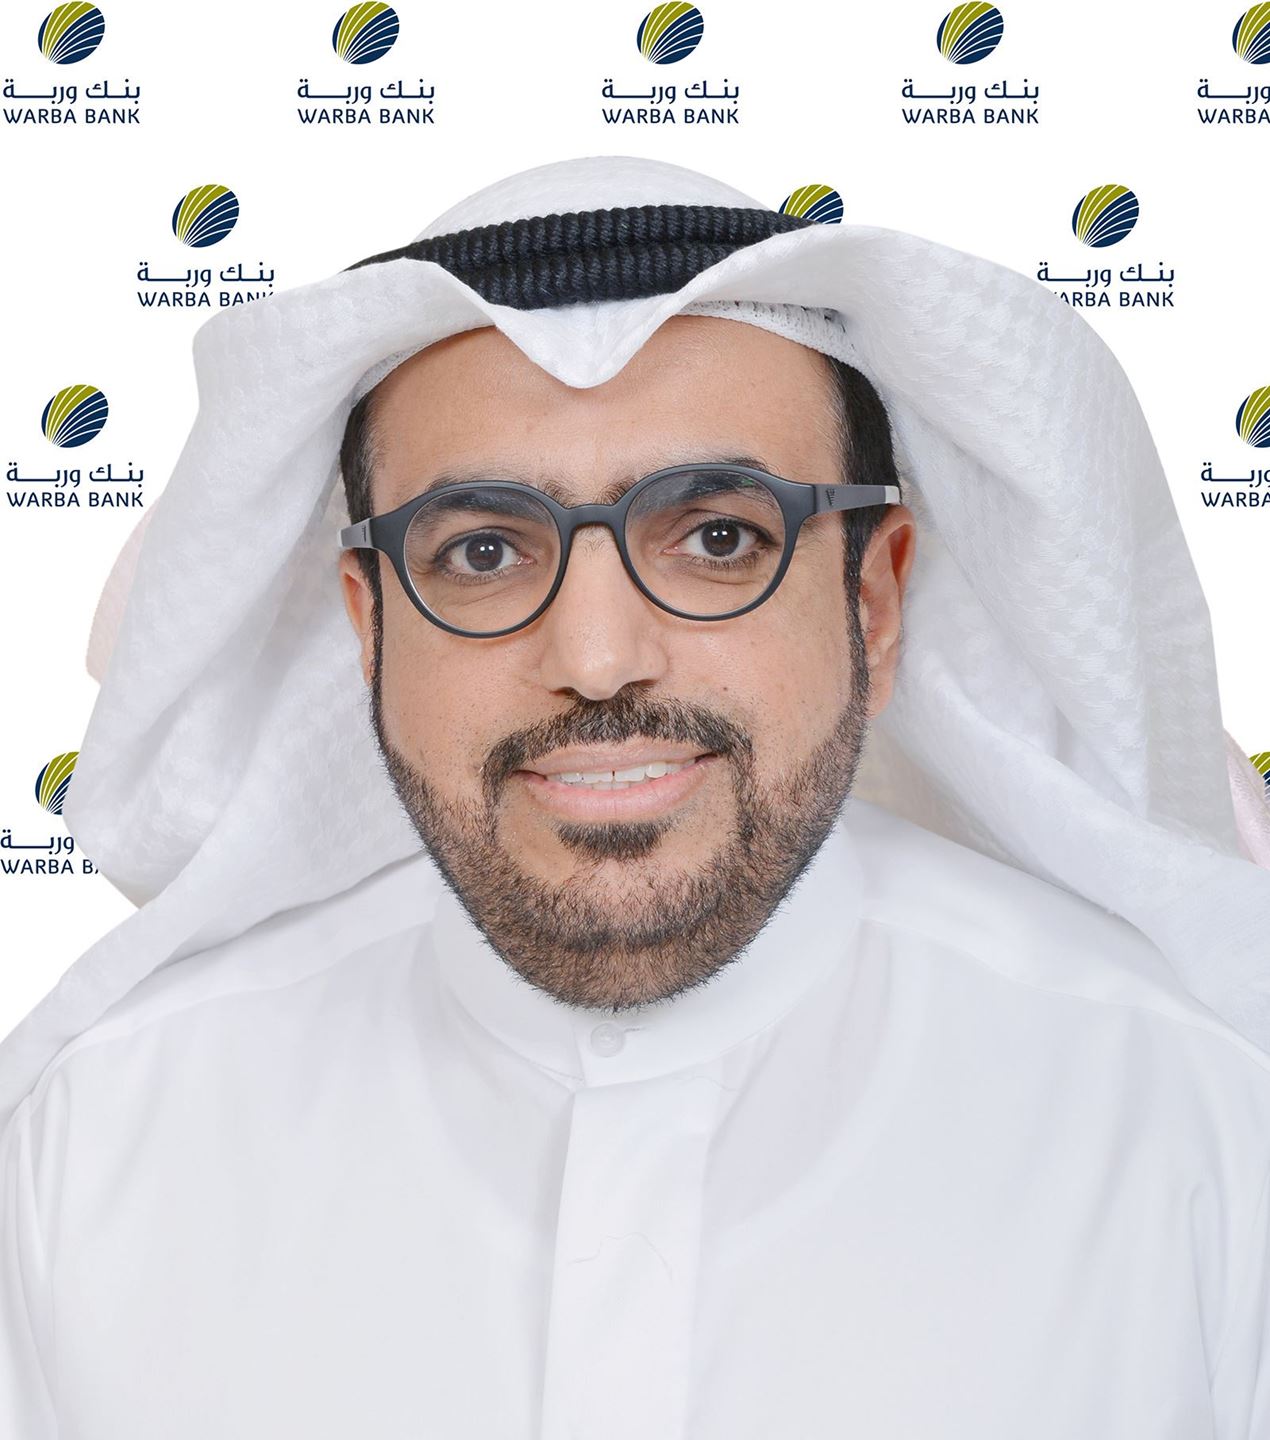 السيد/ شاهين حمد الغانم، الرئيس التنفيذي لبنك وربة